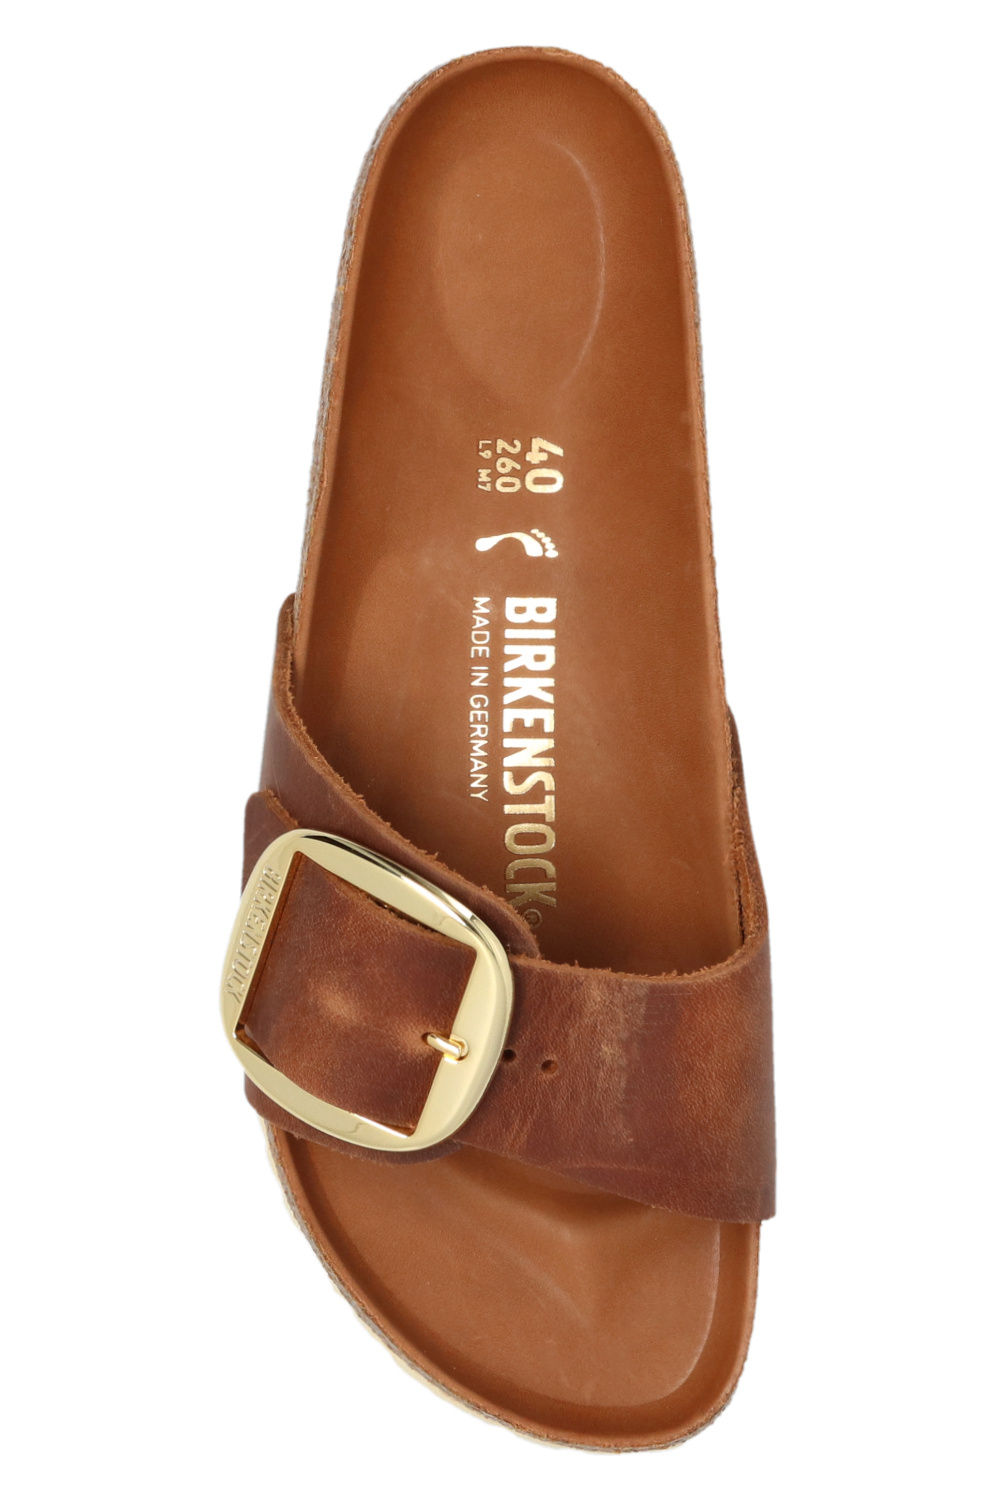 激安通販サイト BIRKENSTOCK Madrid (Waxy Leather) 24.5 - 靴/シューズ